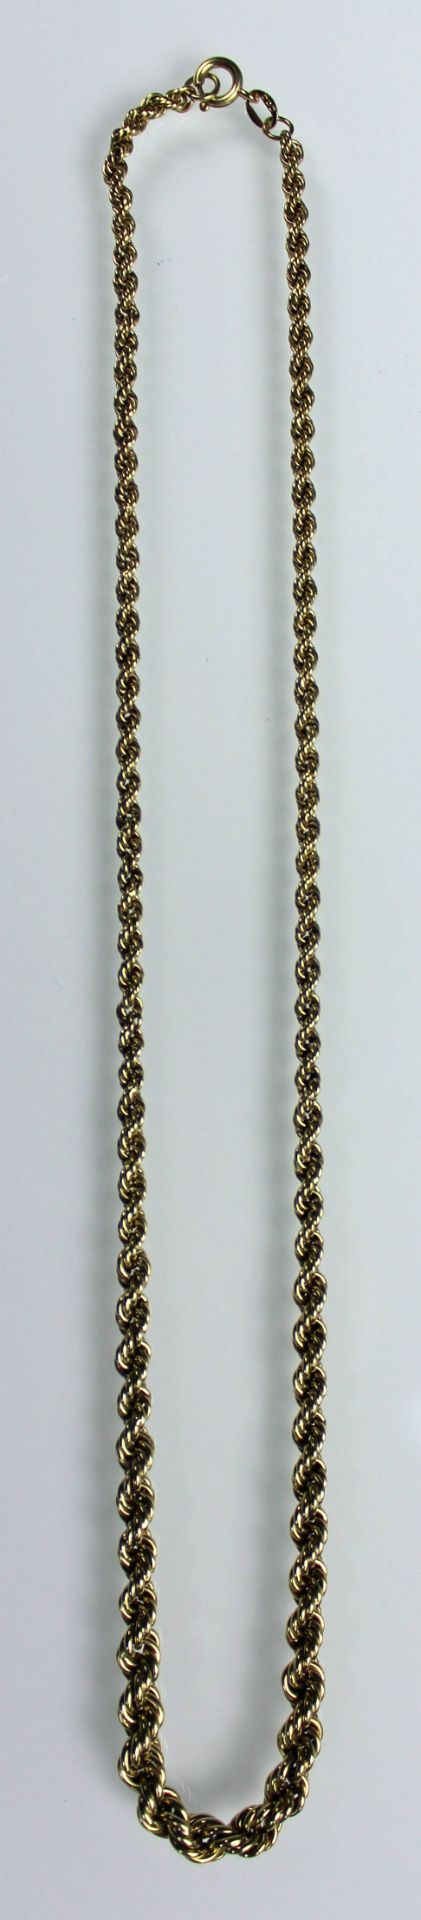 Gelb Gold 585. Halskette. Armkette mit Brillant, dazu ein Anhänger.20,9 Gramm Gesamtgewicht. - Bild 5 aus 10